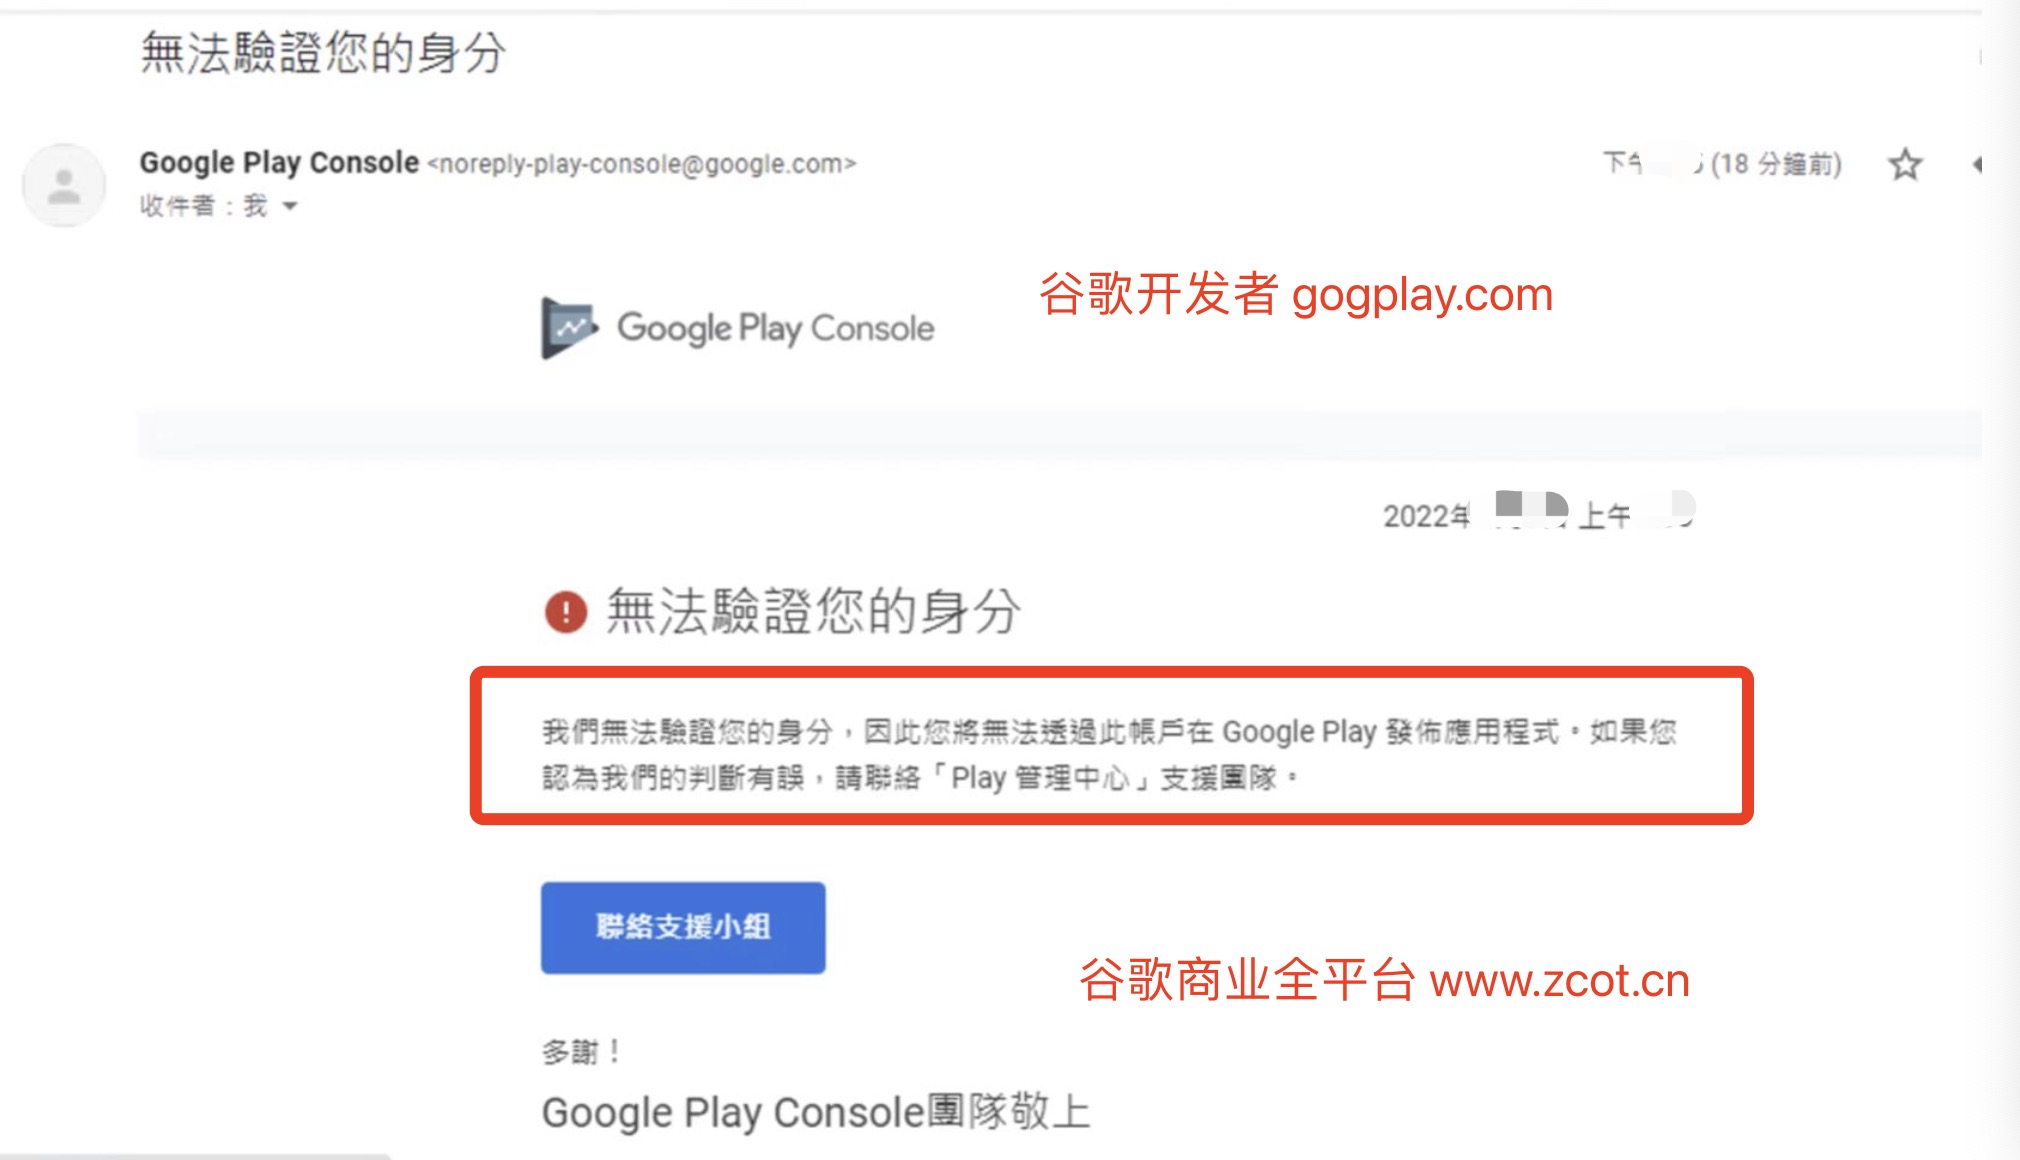 La autenticación de Google Play falló: no podemos verificar su identidad, por lo que no podrá publicar aplicaciones en Google Play con esta cuenta